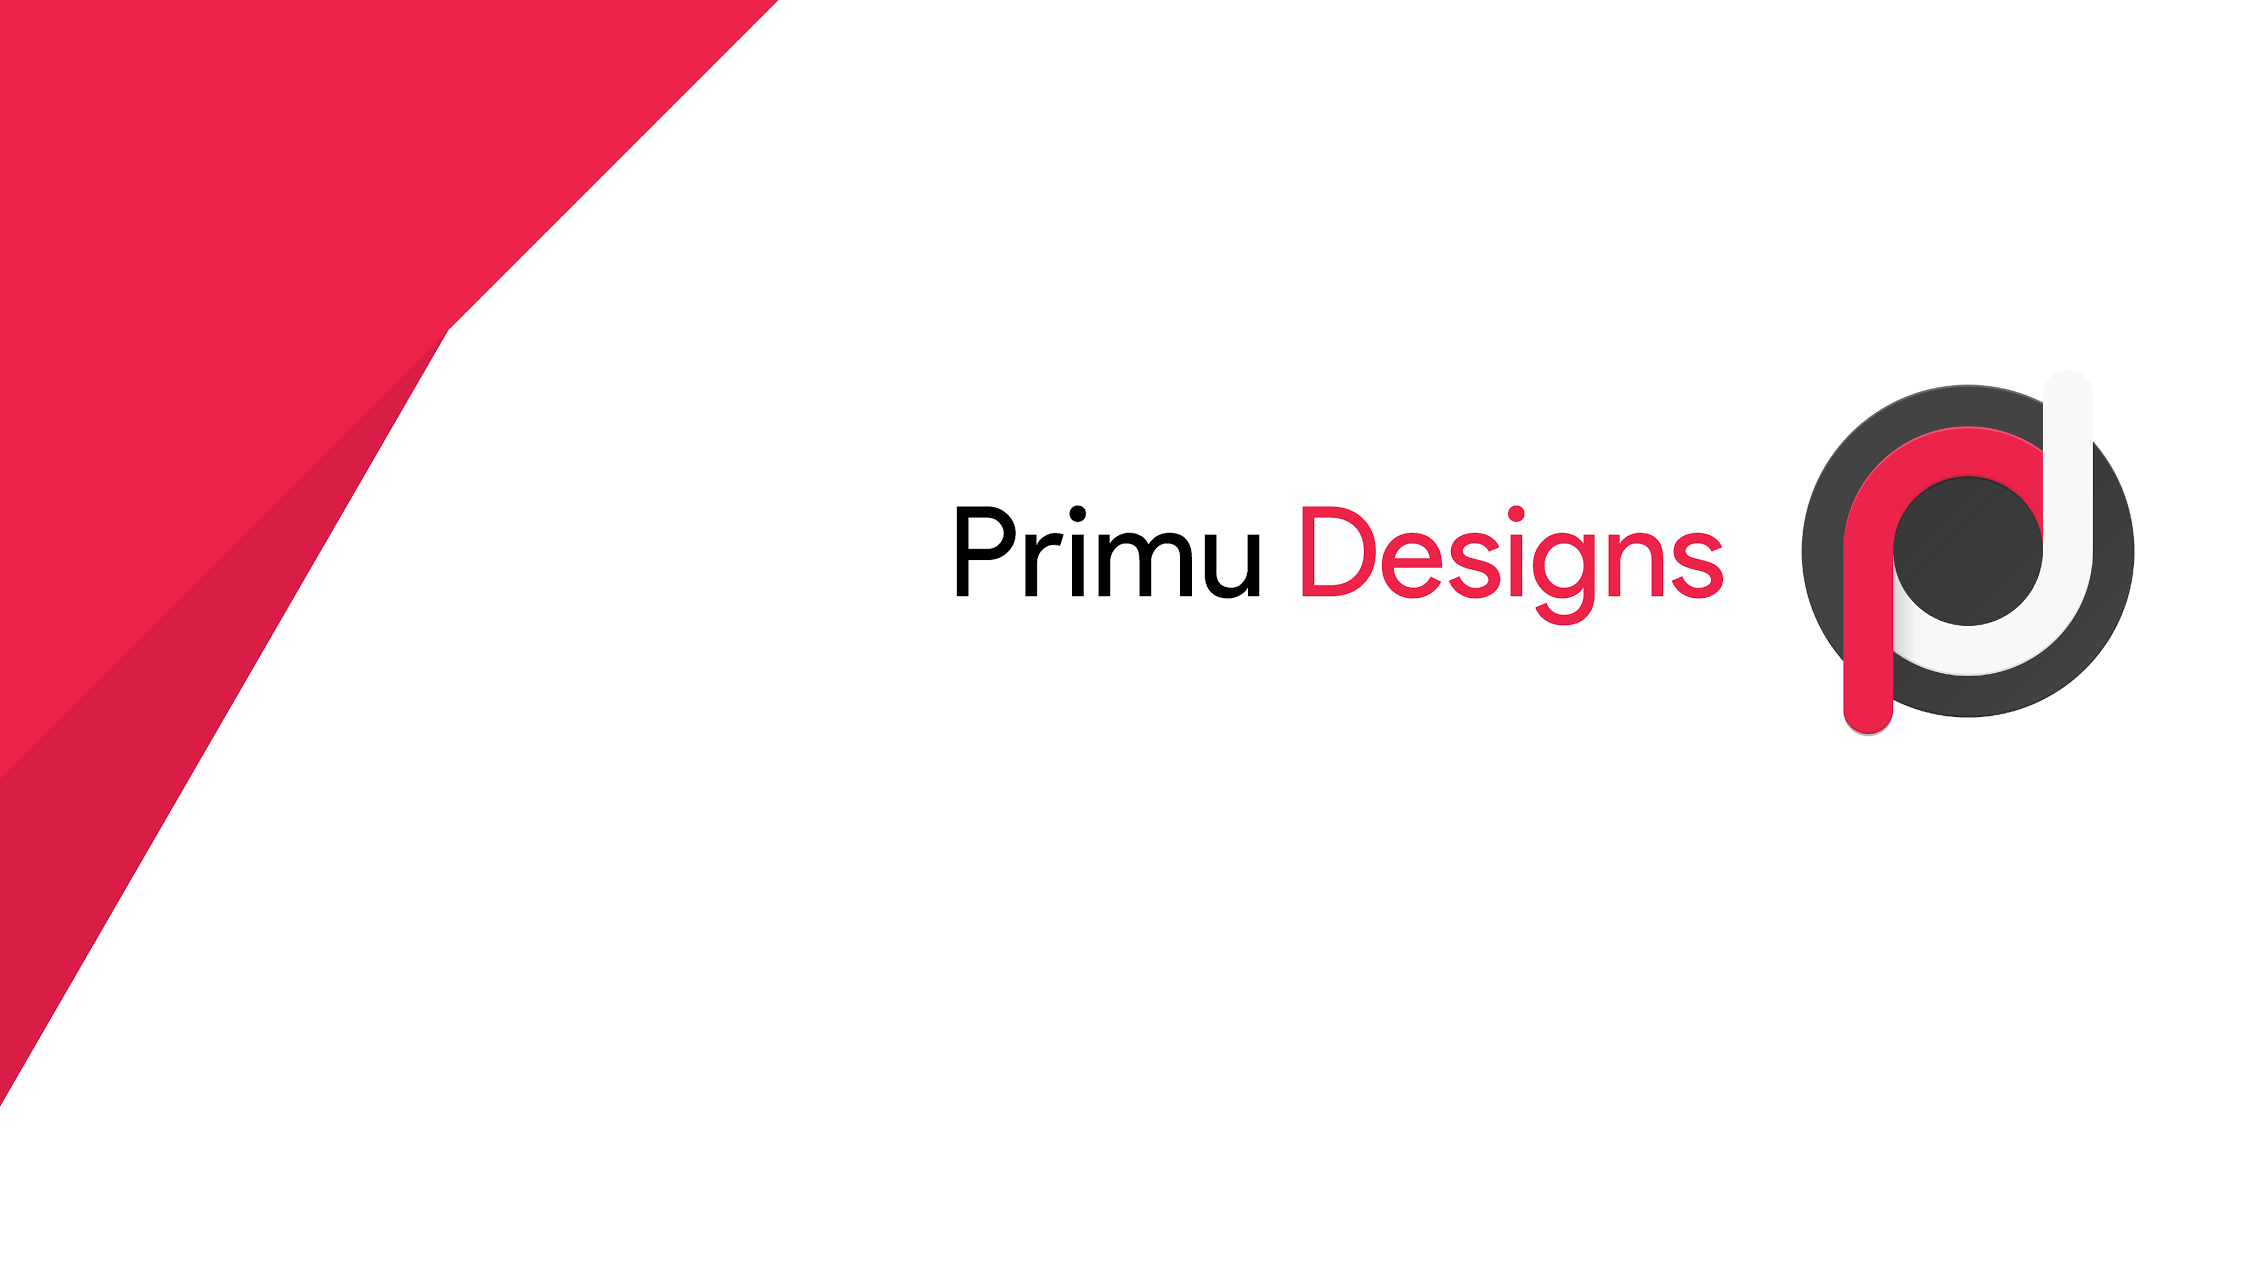 Primu Designs